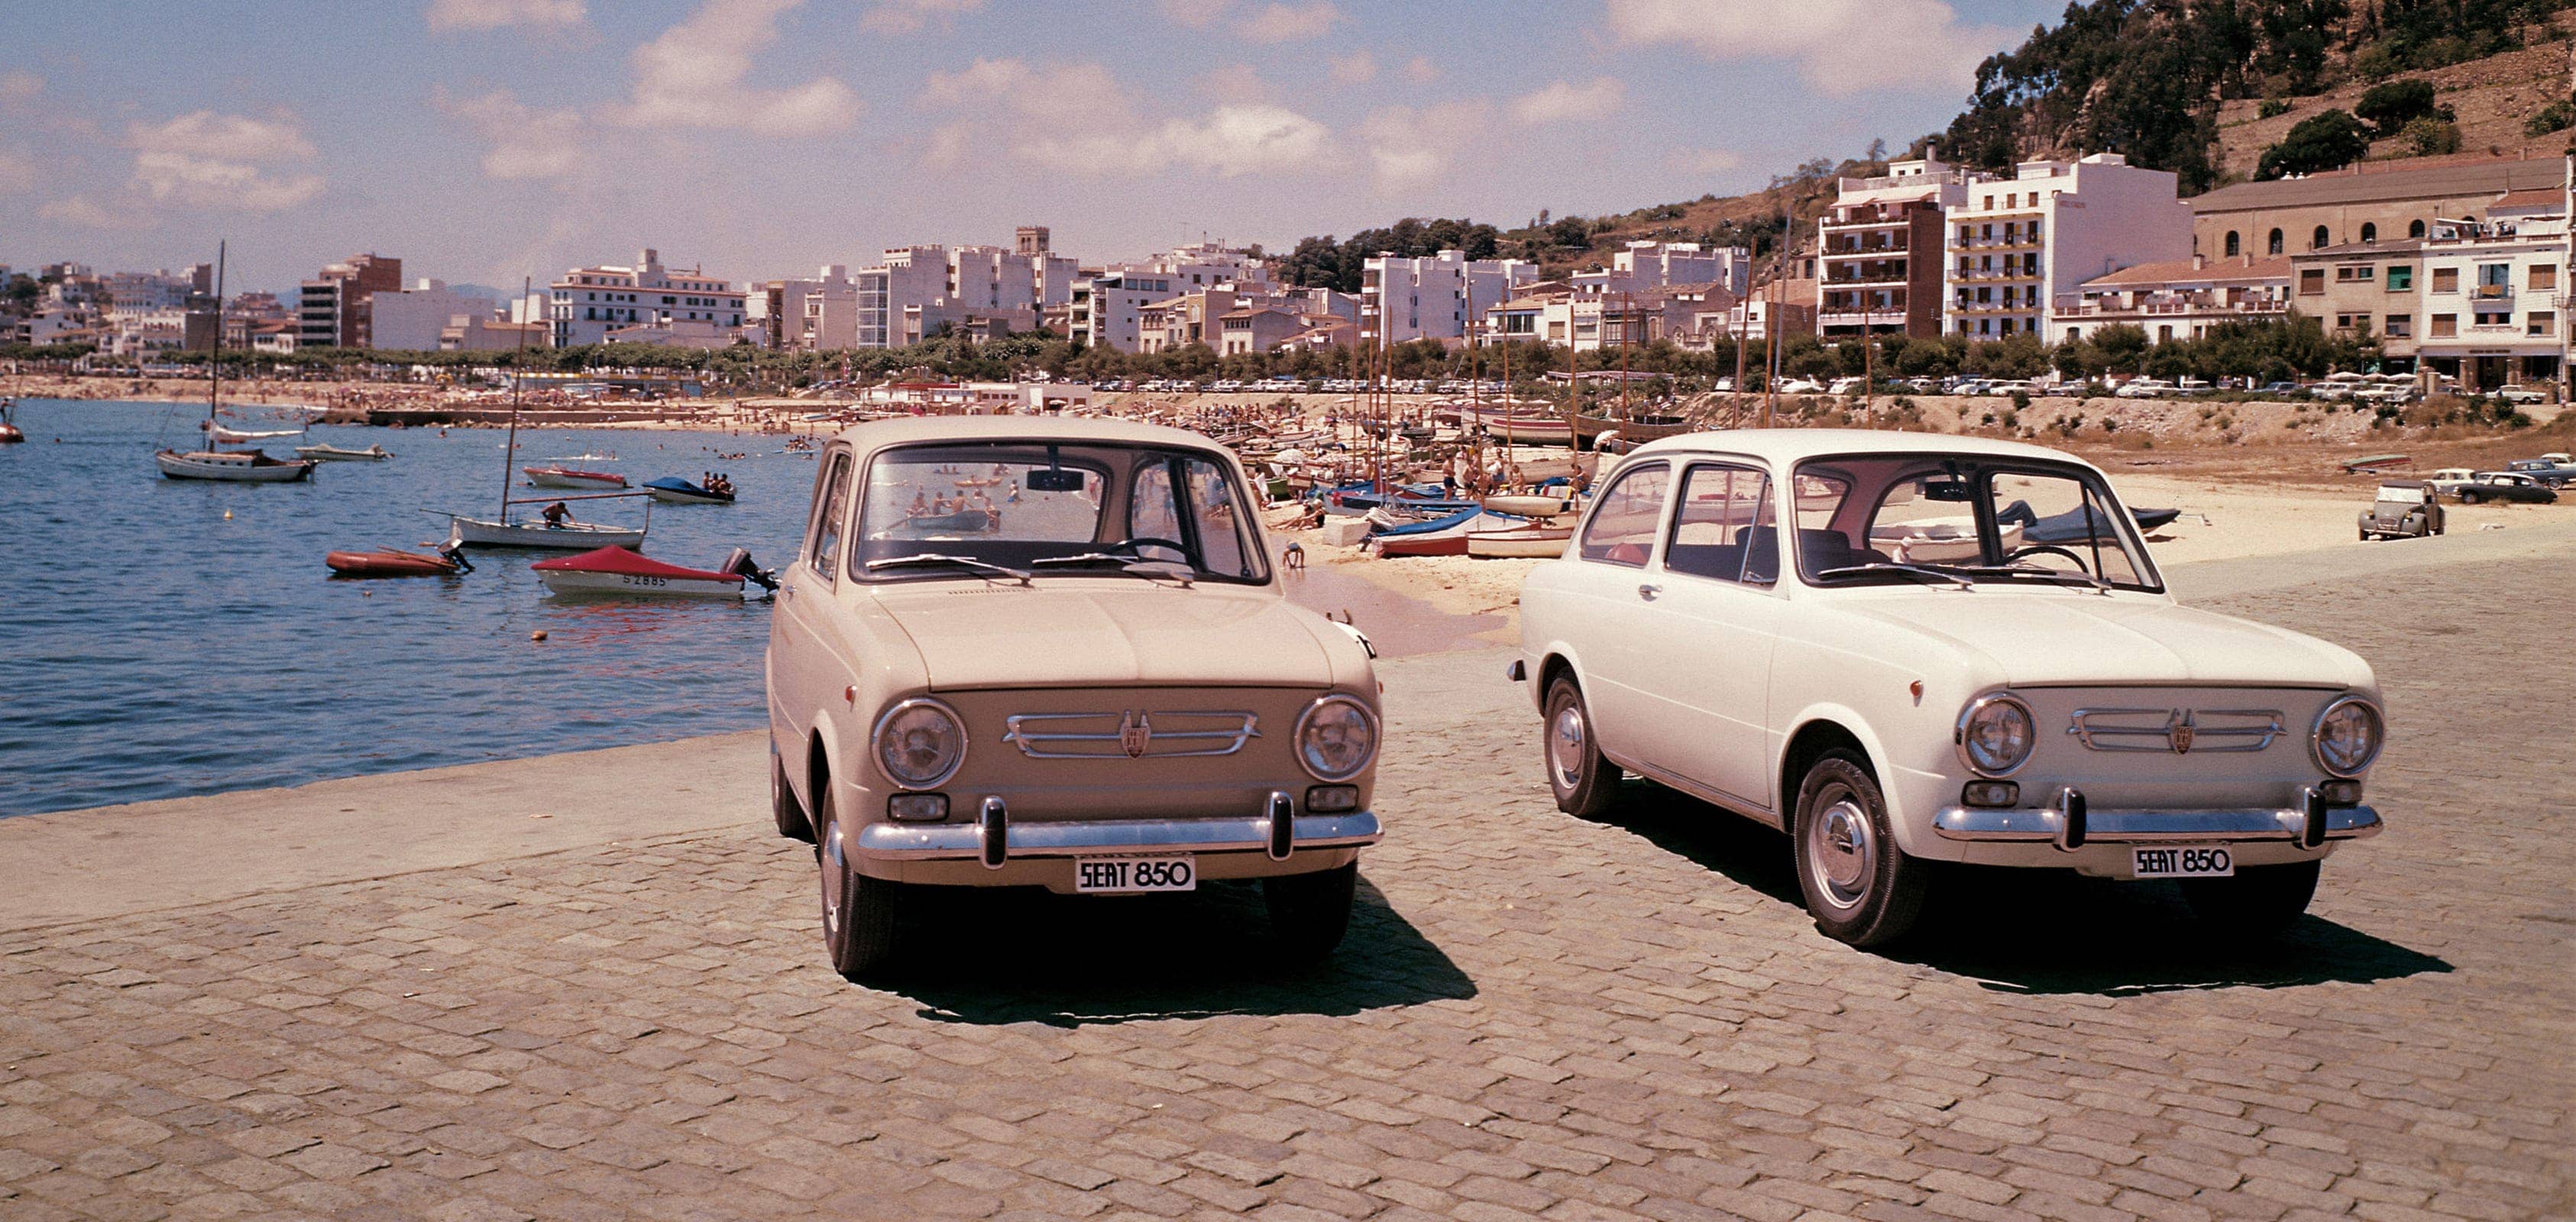 SEATi brändi ajalugu 1960ndatel eksport - SEAT 850 autod rannaäärsel pildil